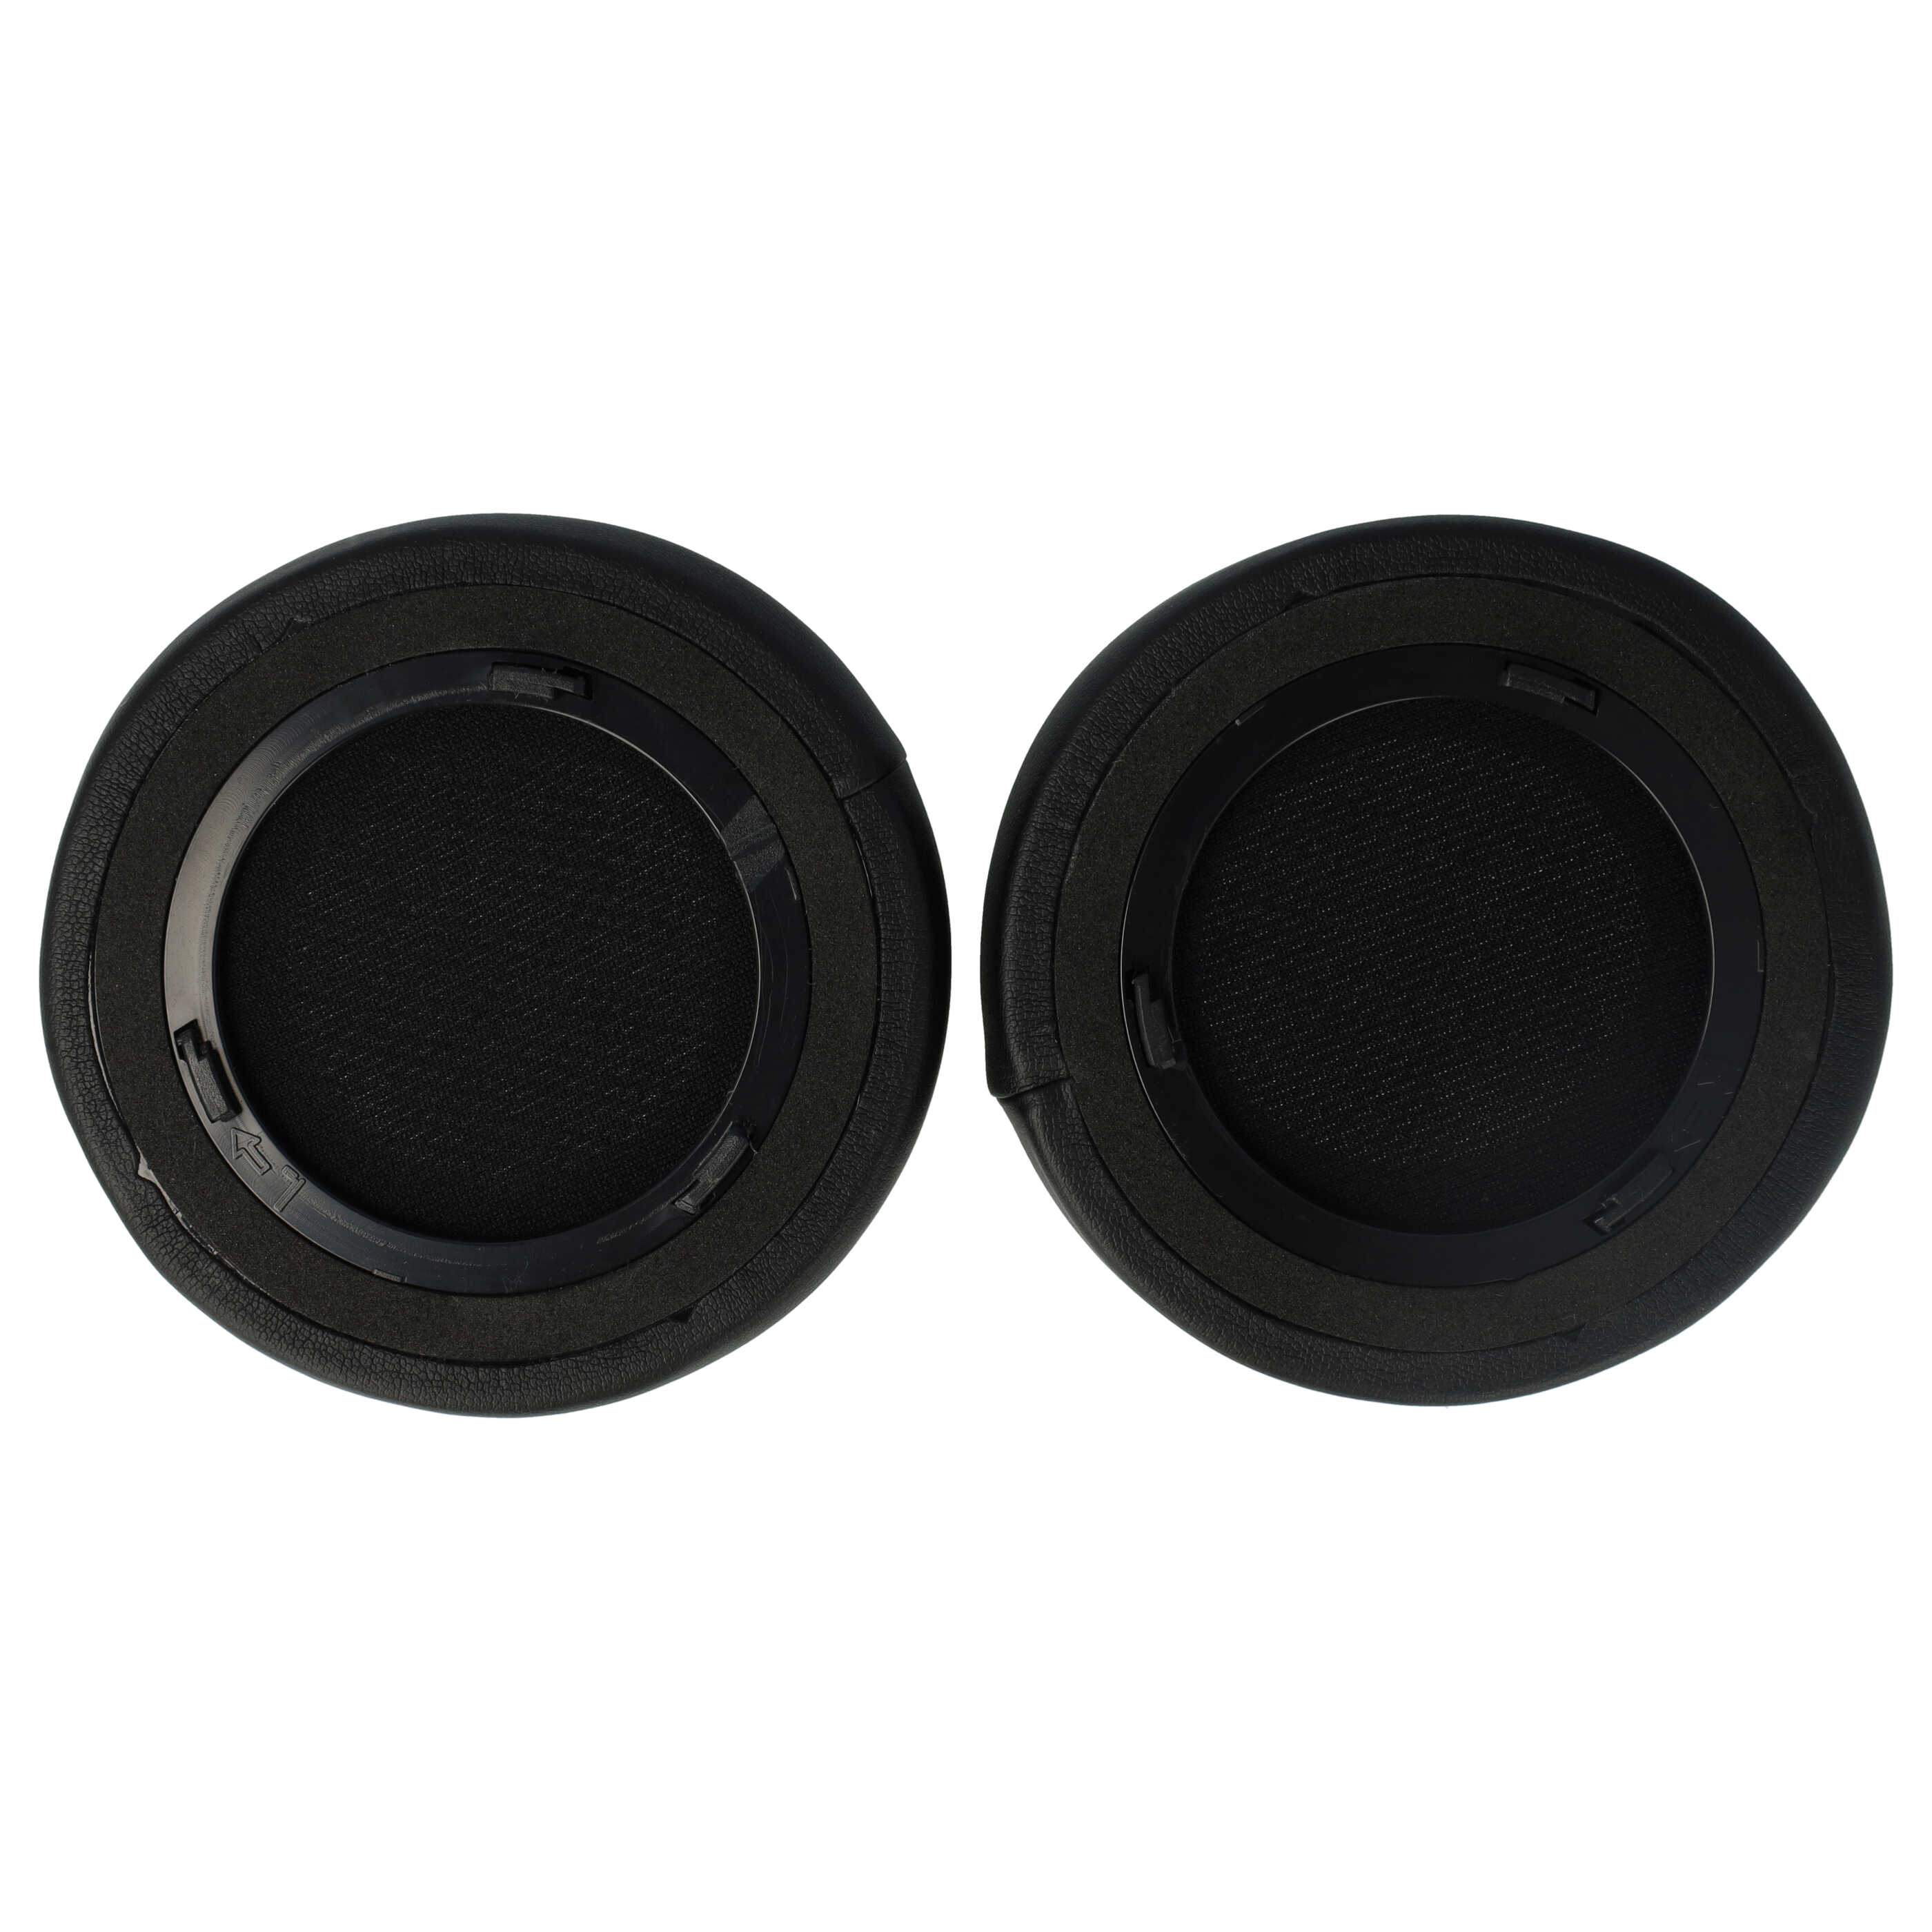 Ohrenpolster für Corsair Virtuoso RGB Wireless SE Kopfhörer u.a., 11,2 x 10,1 cm, Schwarz